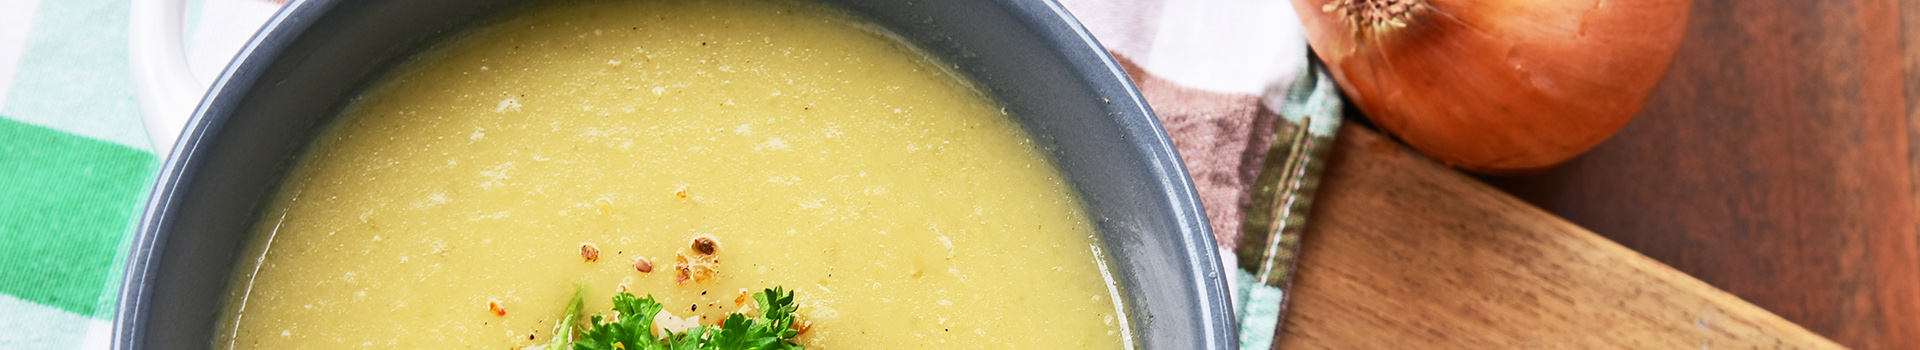 Jerusalem Artichoke Soup